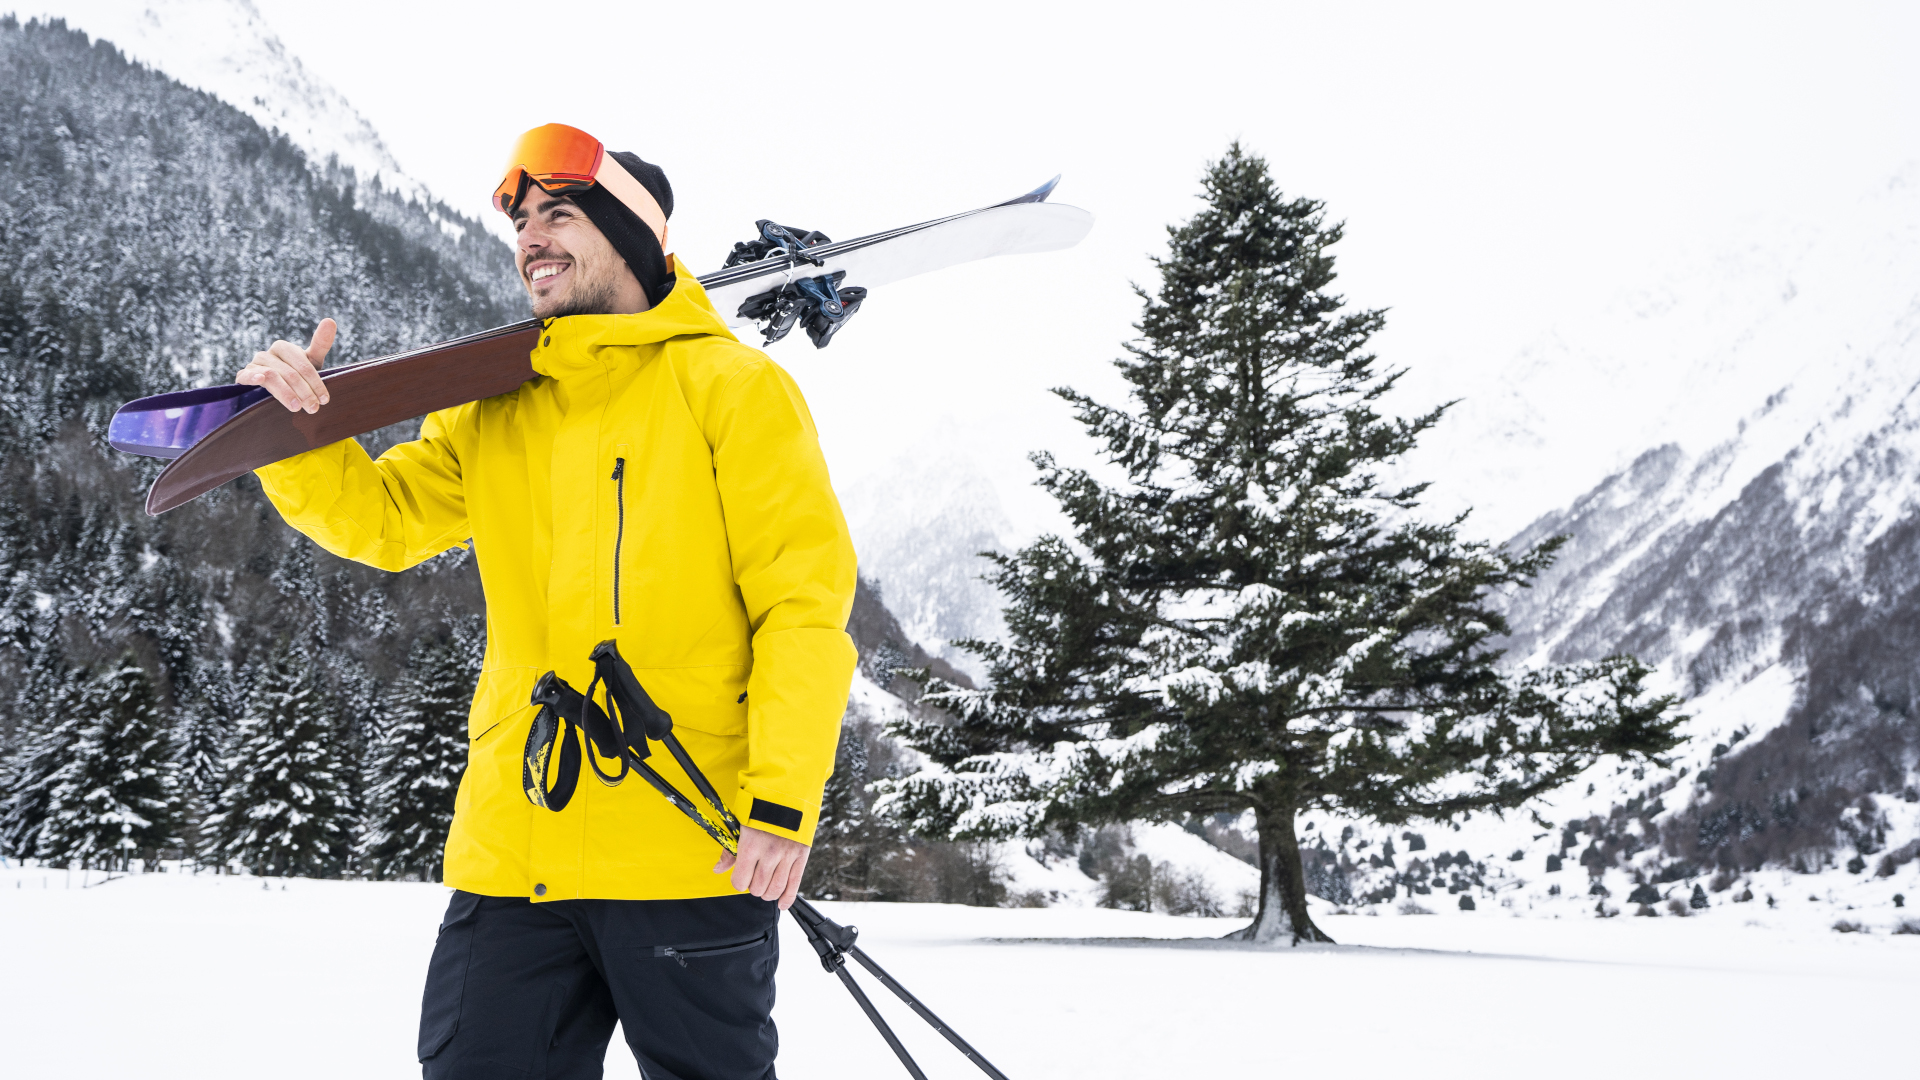 How to choose a ski jacket